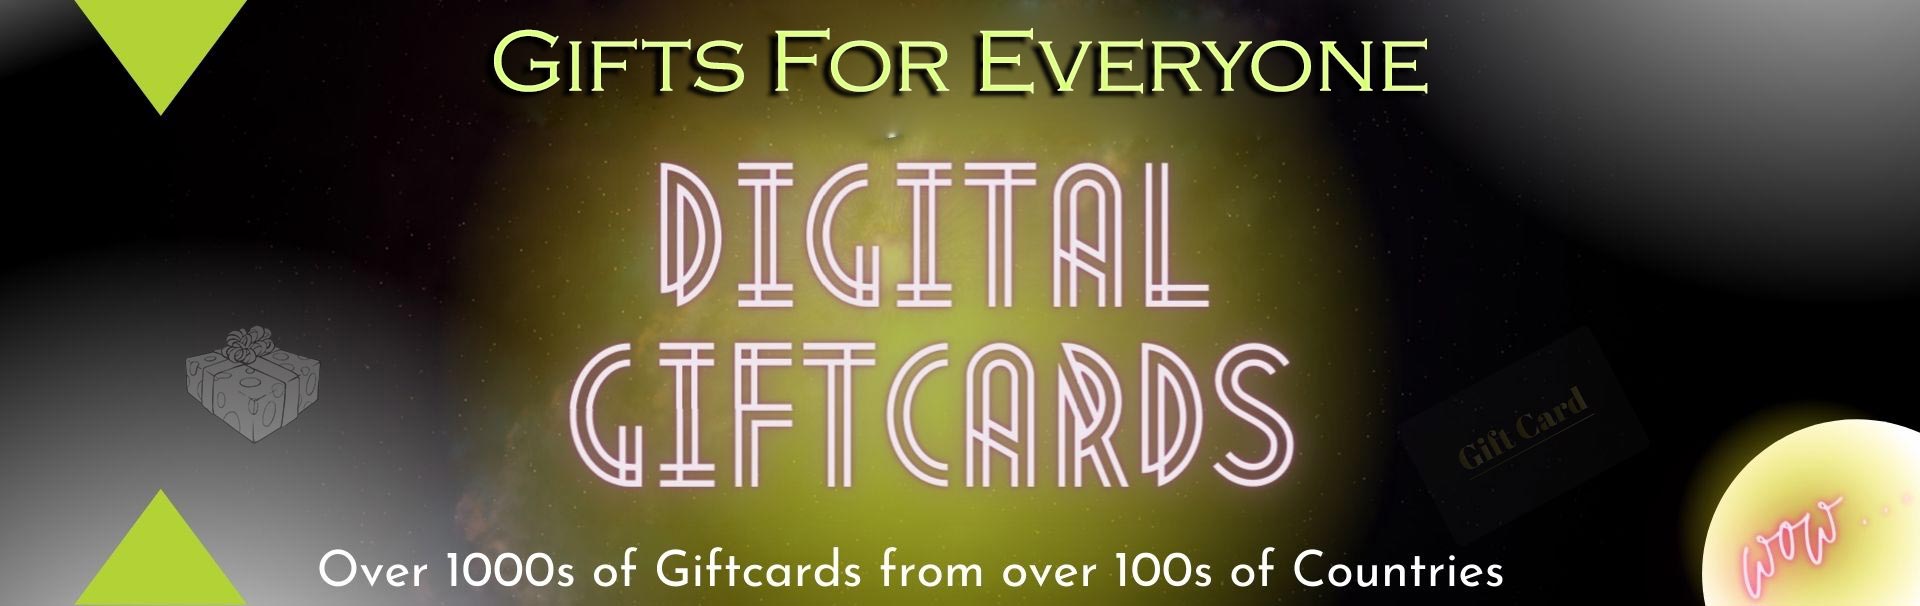 digital giftcards